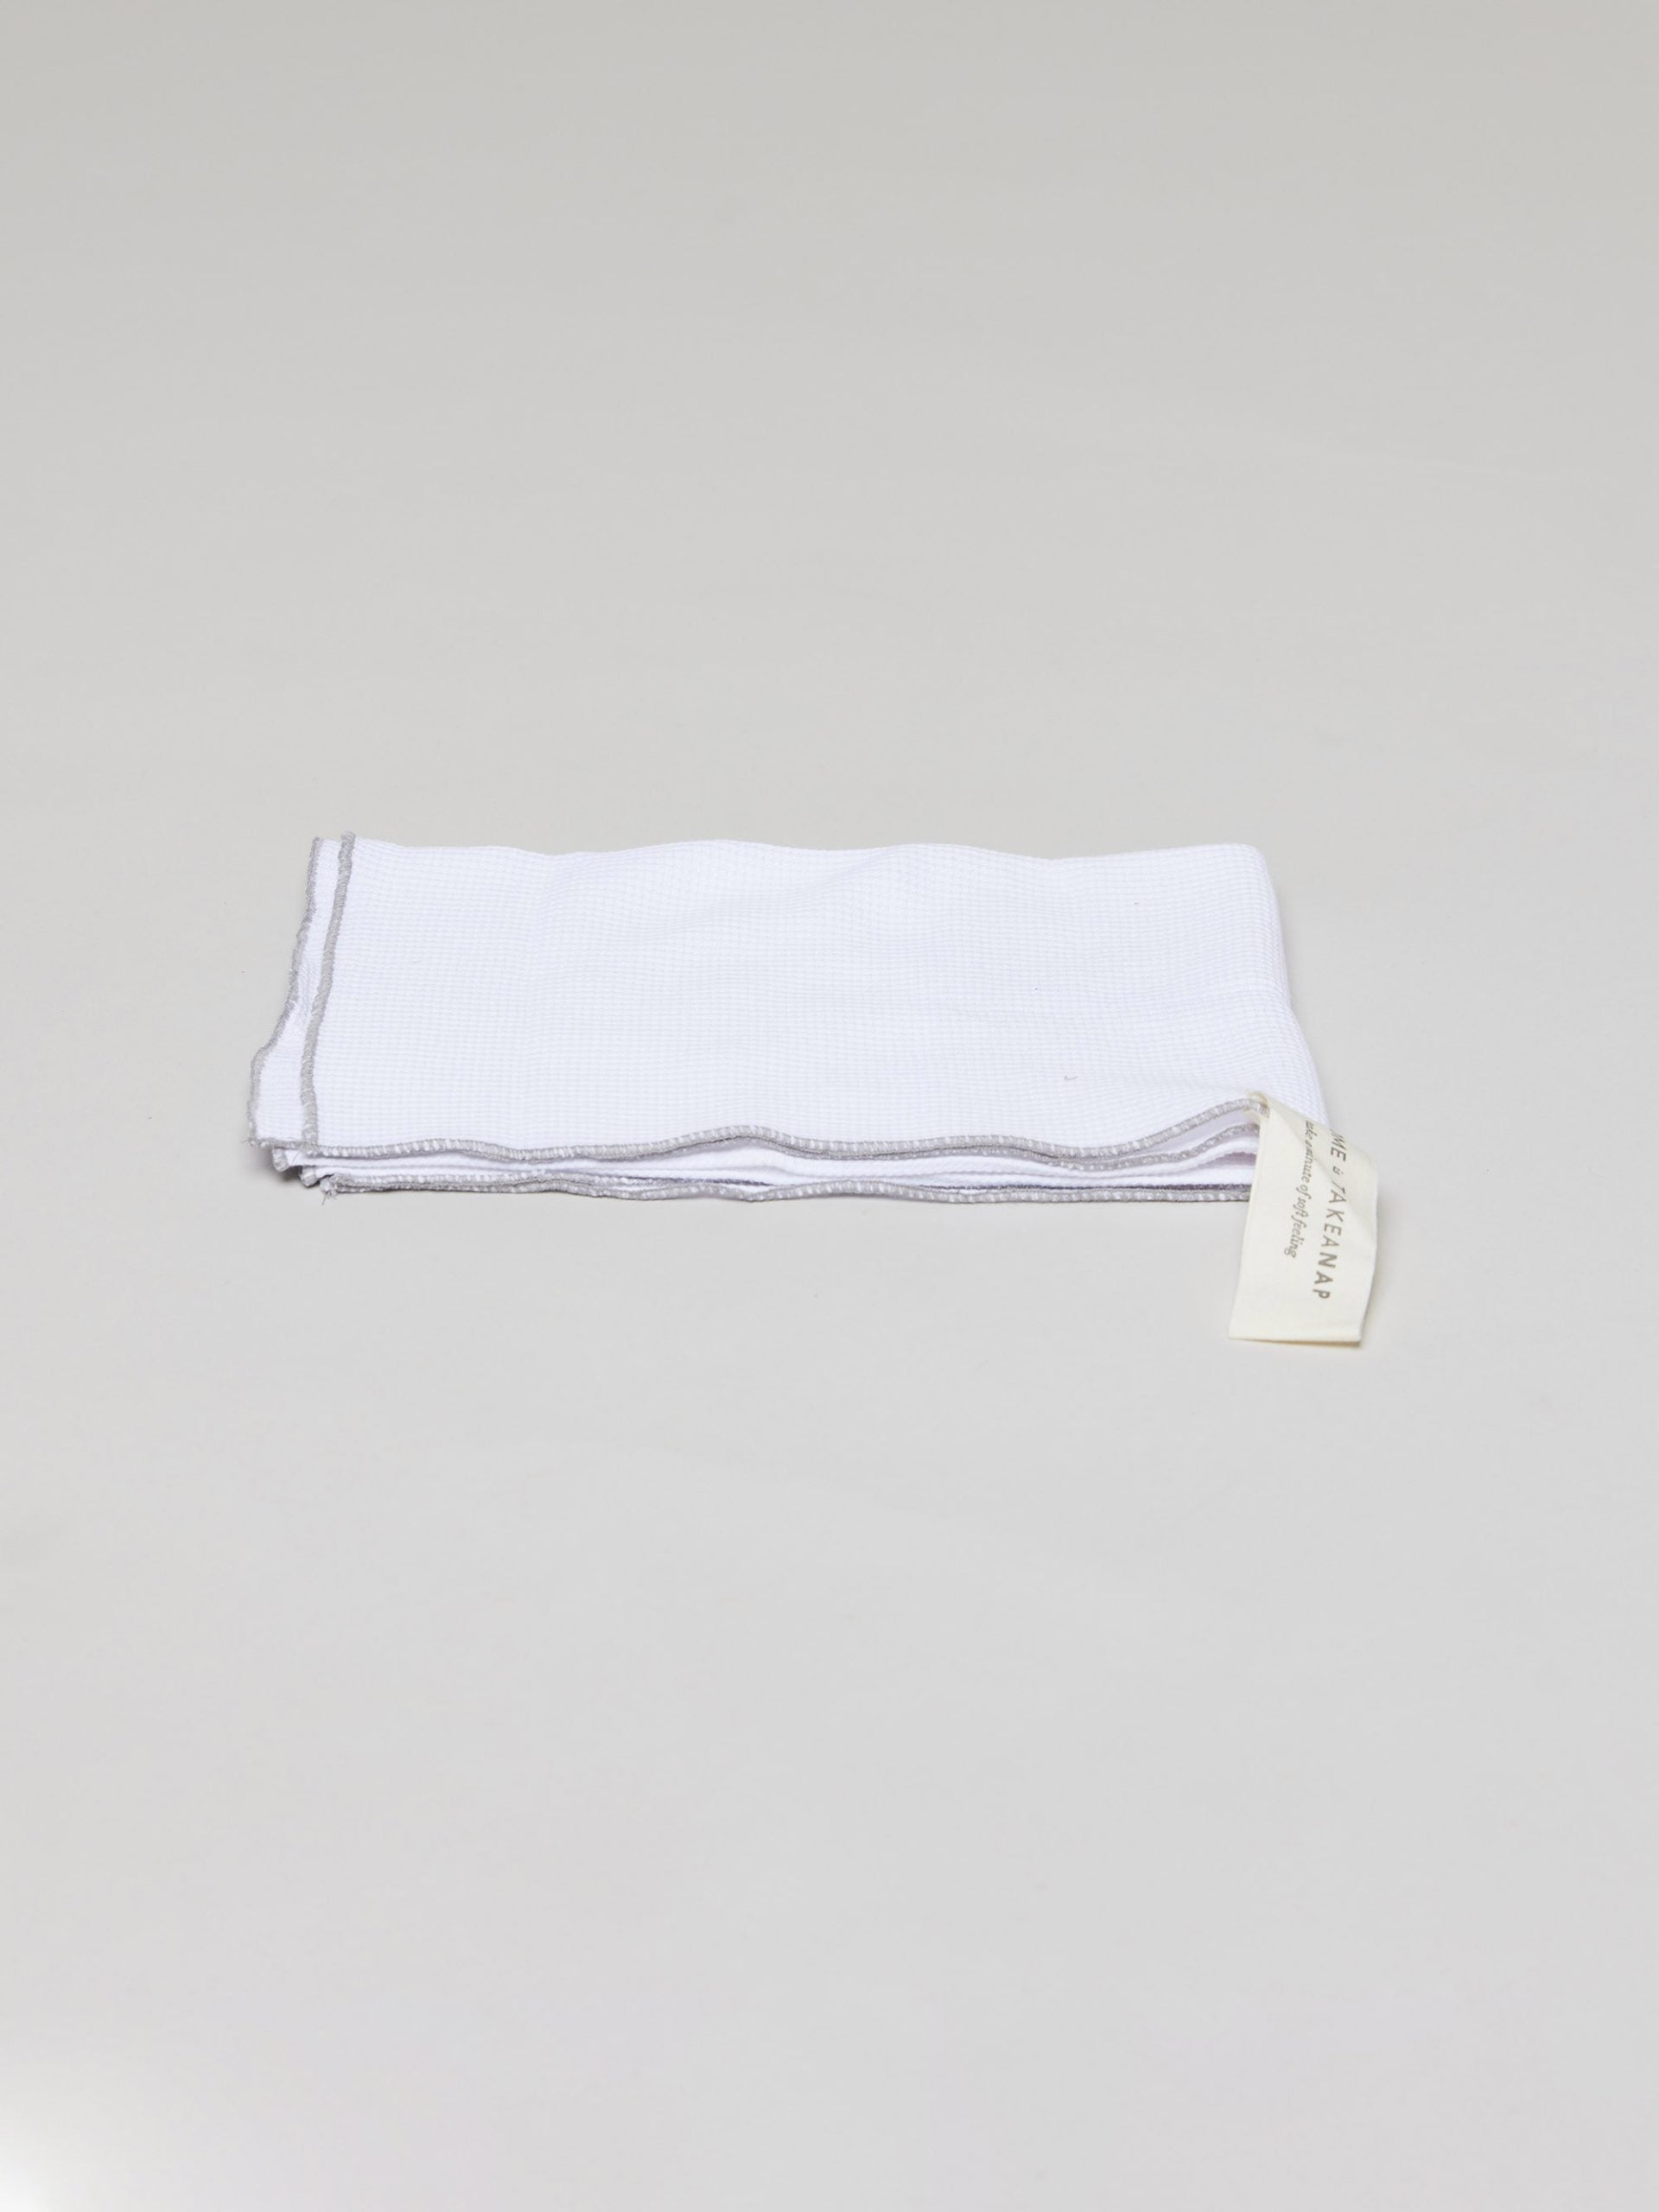 מגבת מטבח ג'קארד בצבע לבן על רקע אפור בהיר